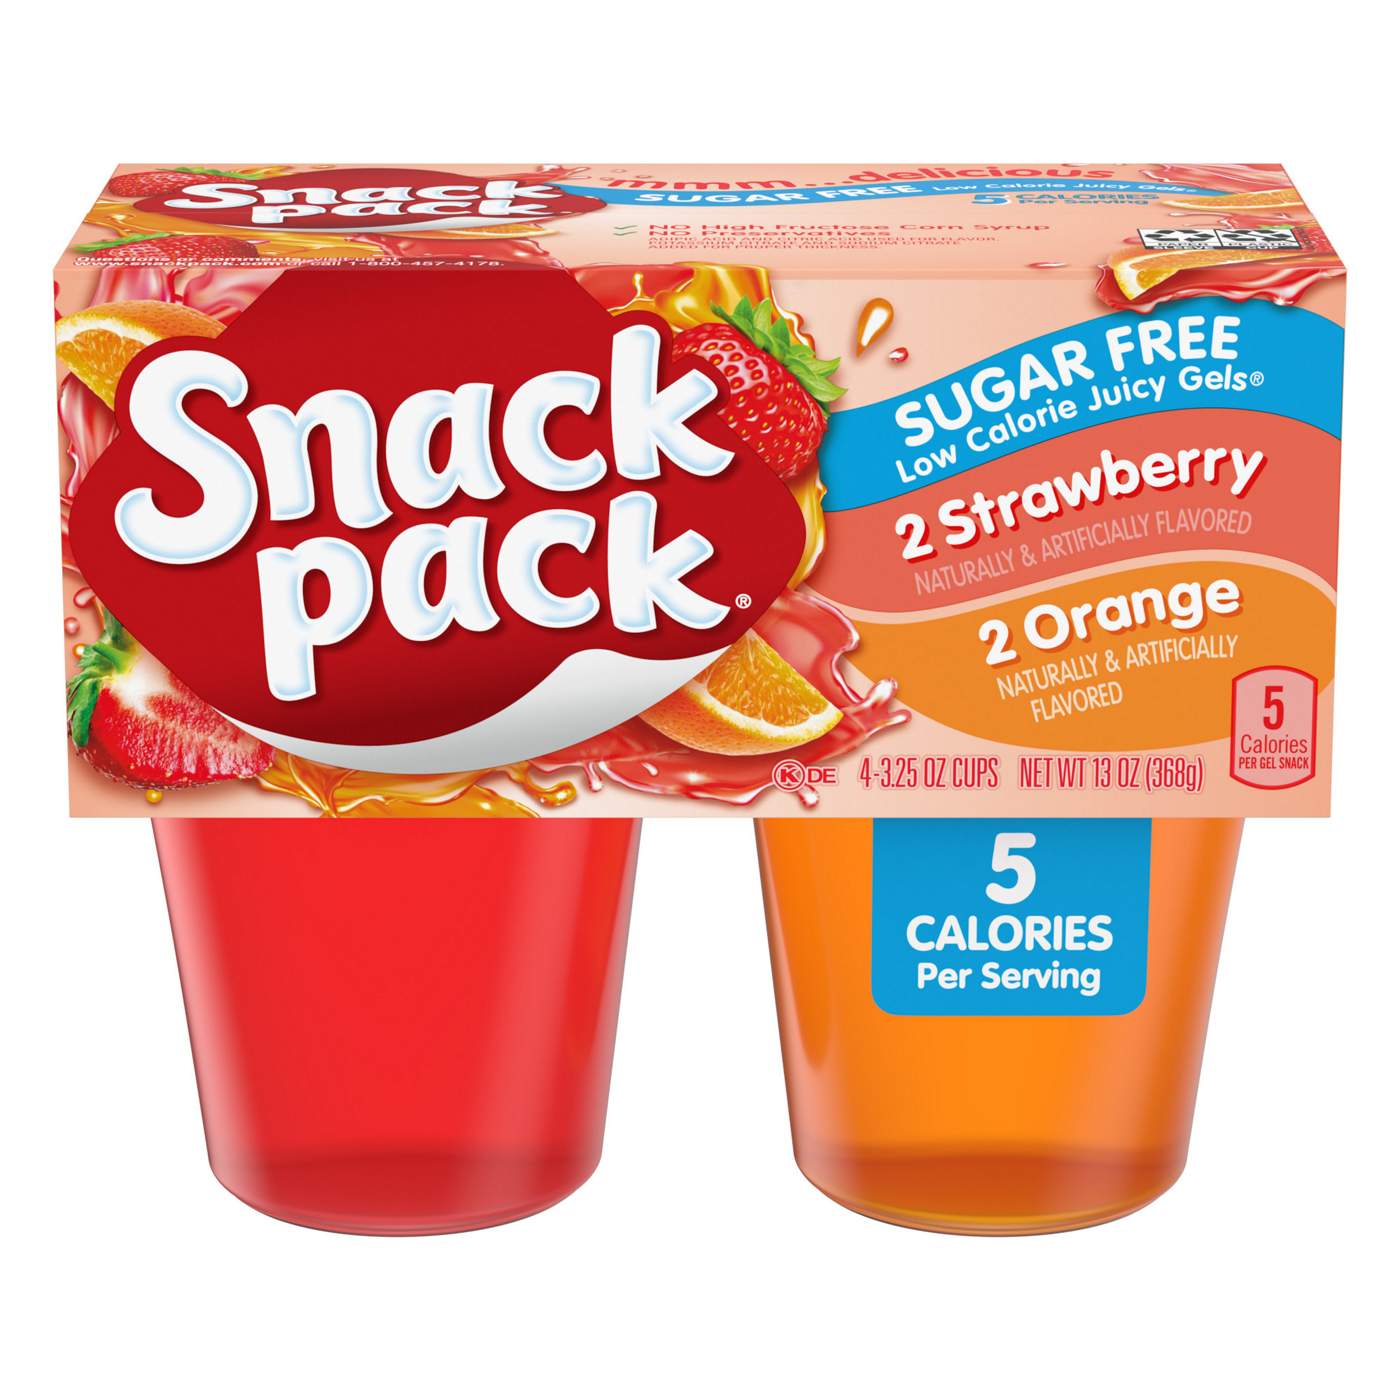 Snack Pack Sugar Free Strawberry & Orange Juicy Gels Cups; image 1 of 3